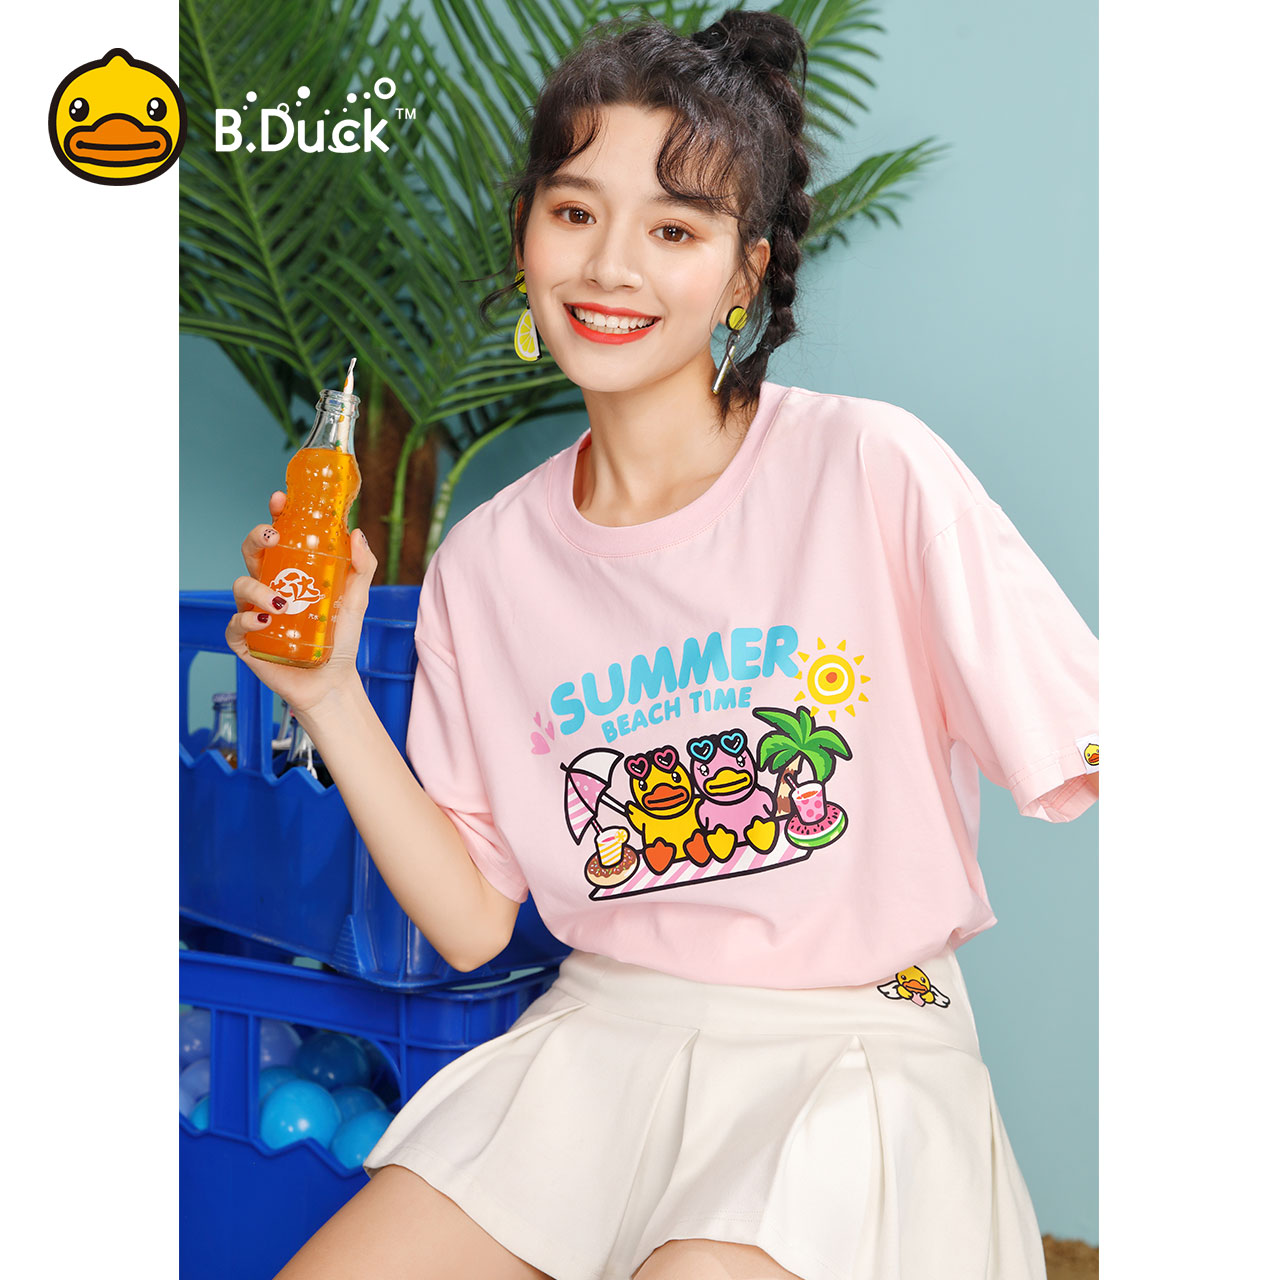 B.Duck小黄鸭女装2019夏装新款粉色短袖T恤女宽松上衣打底衫韩版